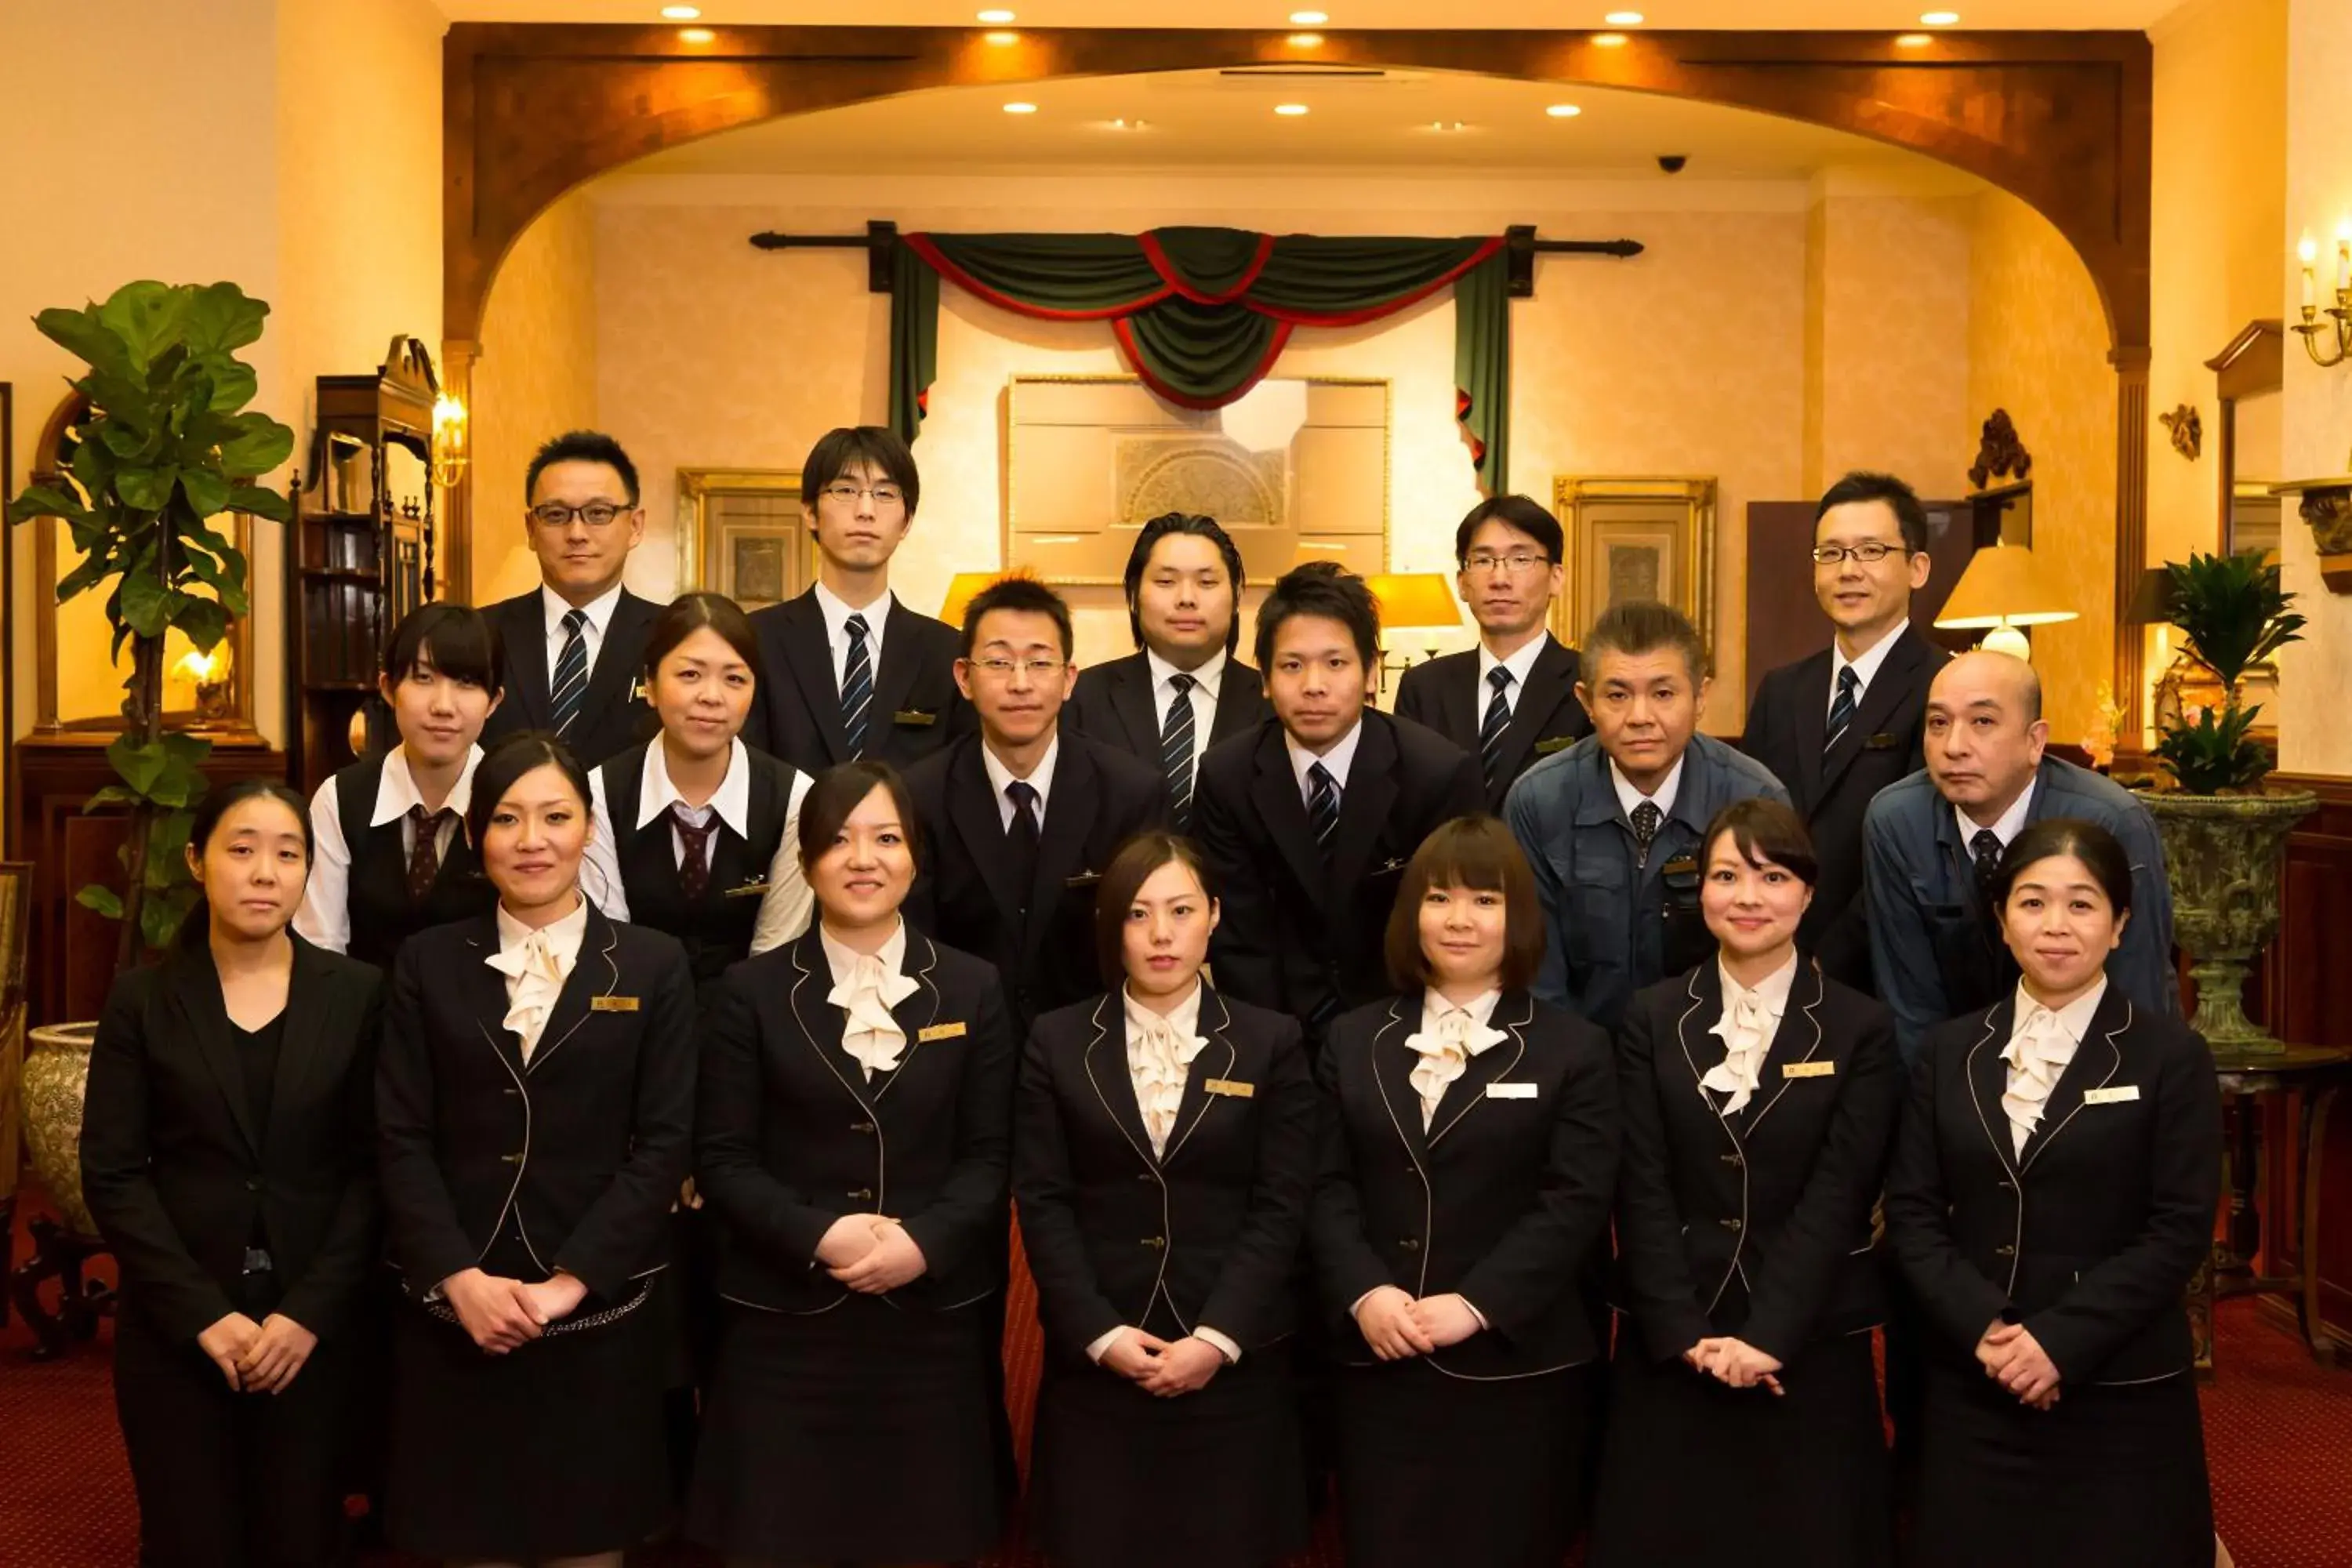 Staff in Dukes Hotel Hakata